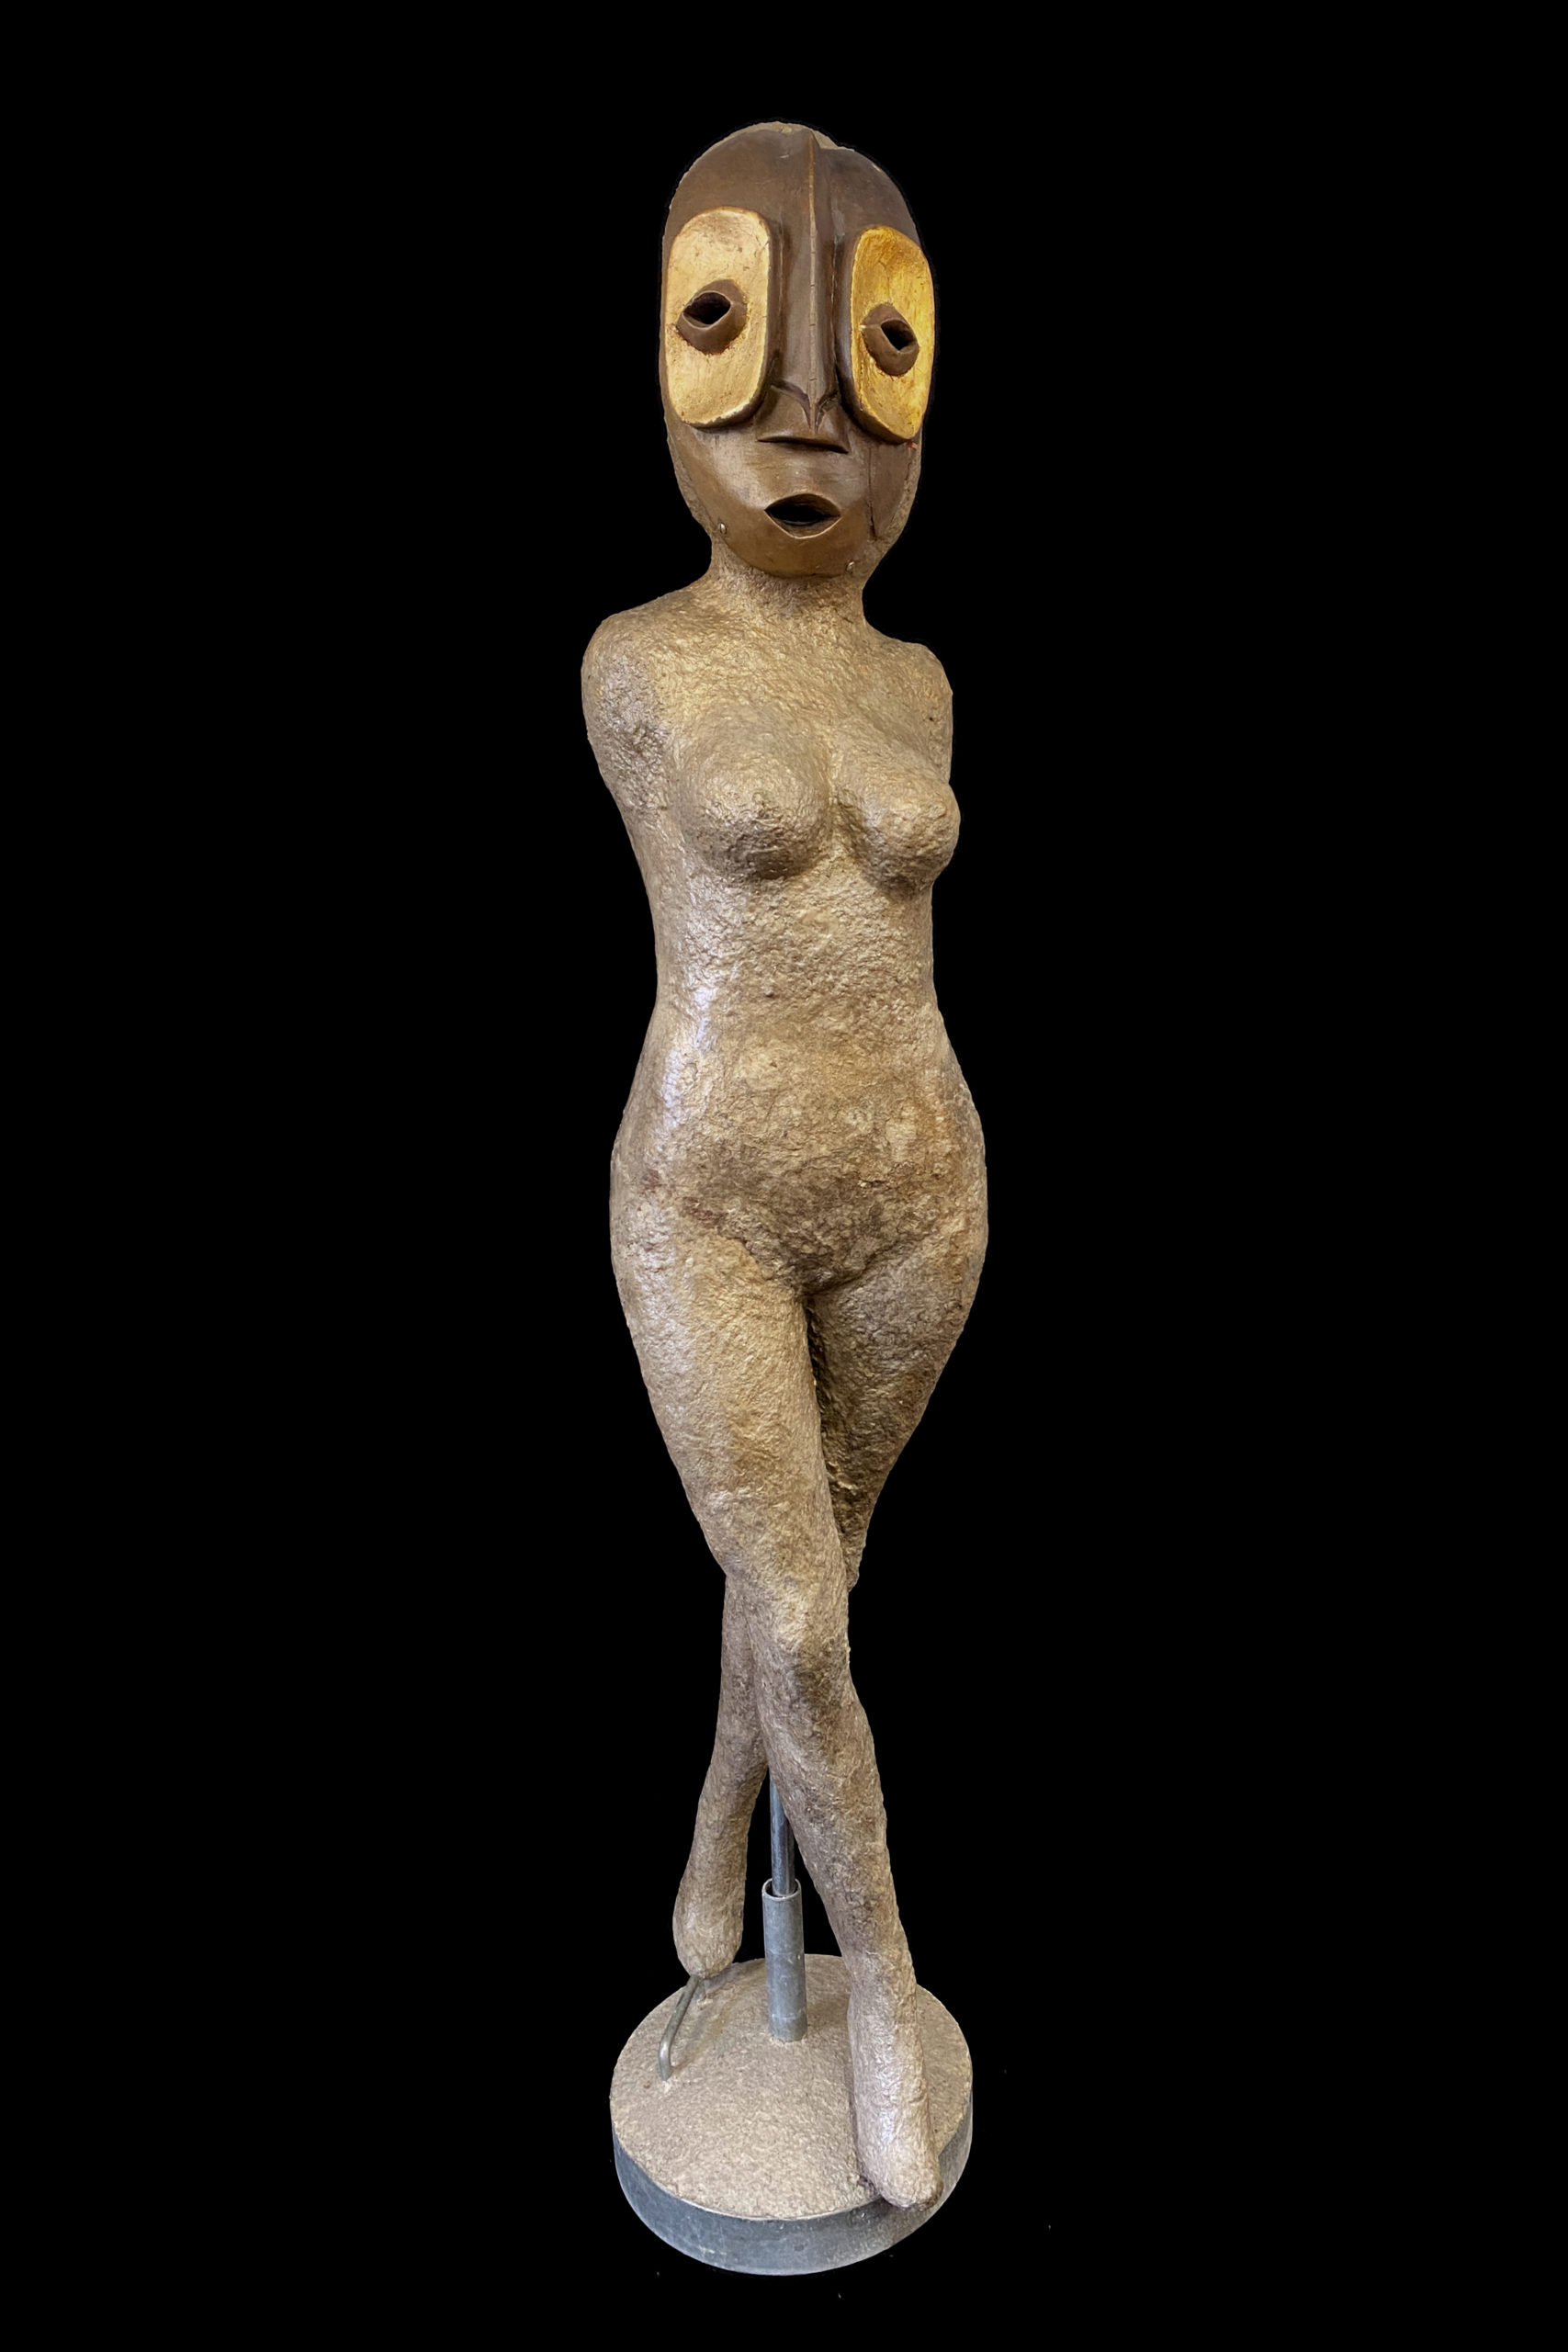 La Gardienne du Savoir - Sculpture contemporaine de Mael Denegri